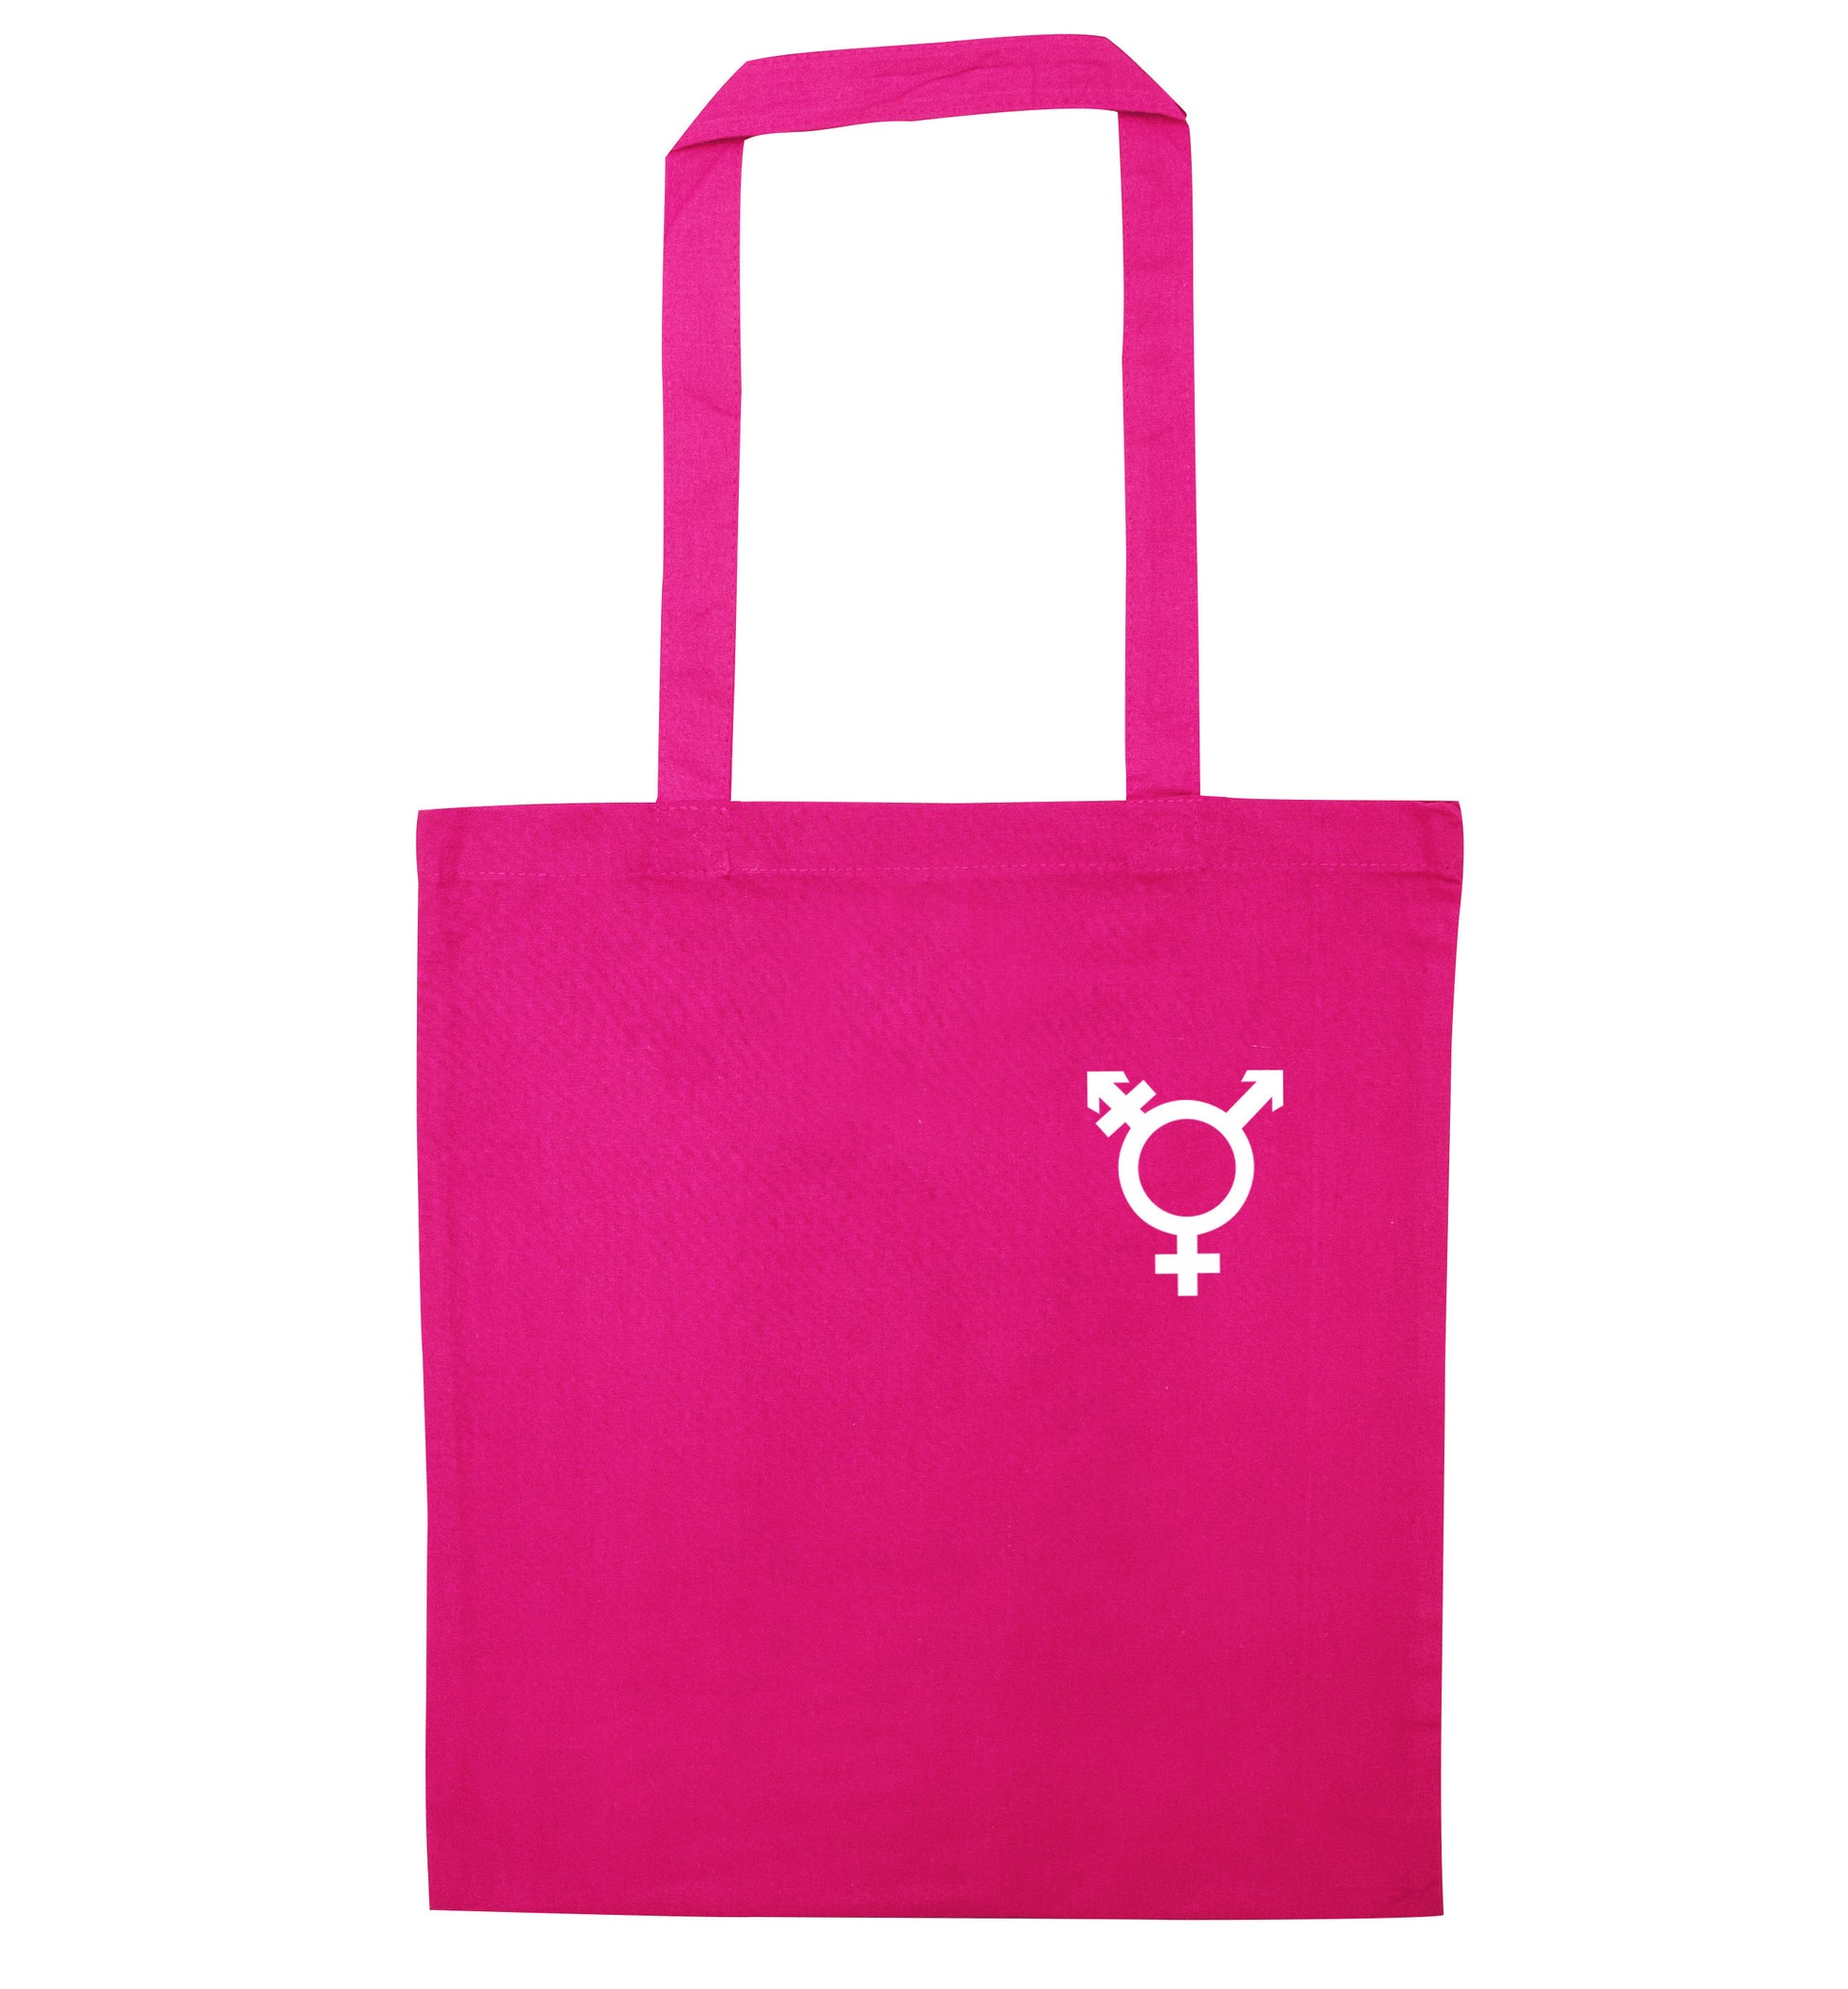 Trans gender symbol pocket pink tote bag